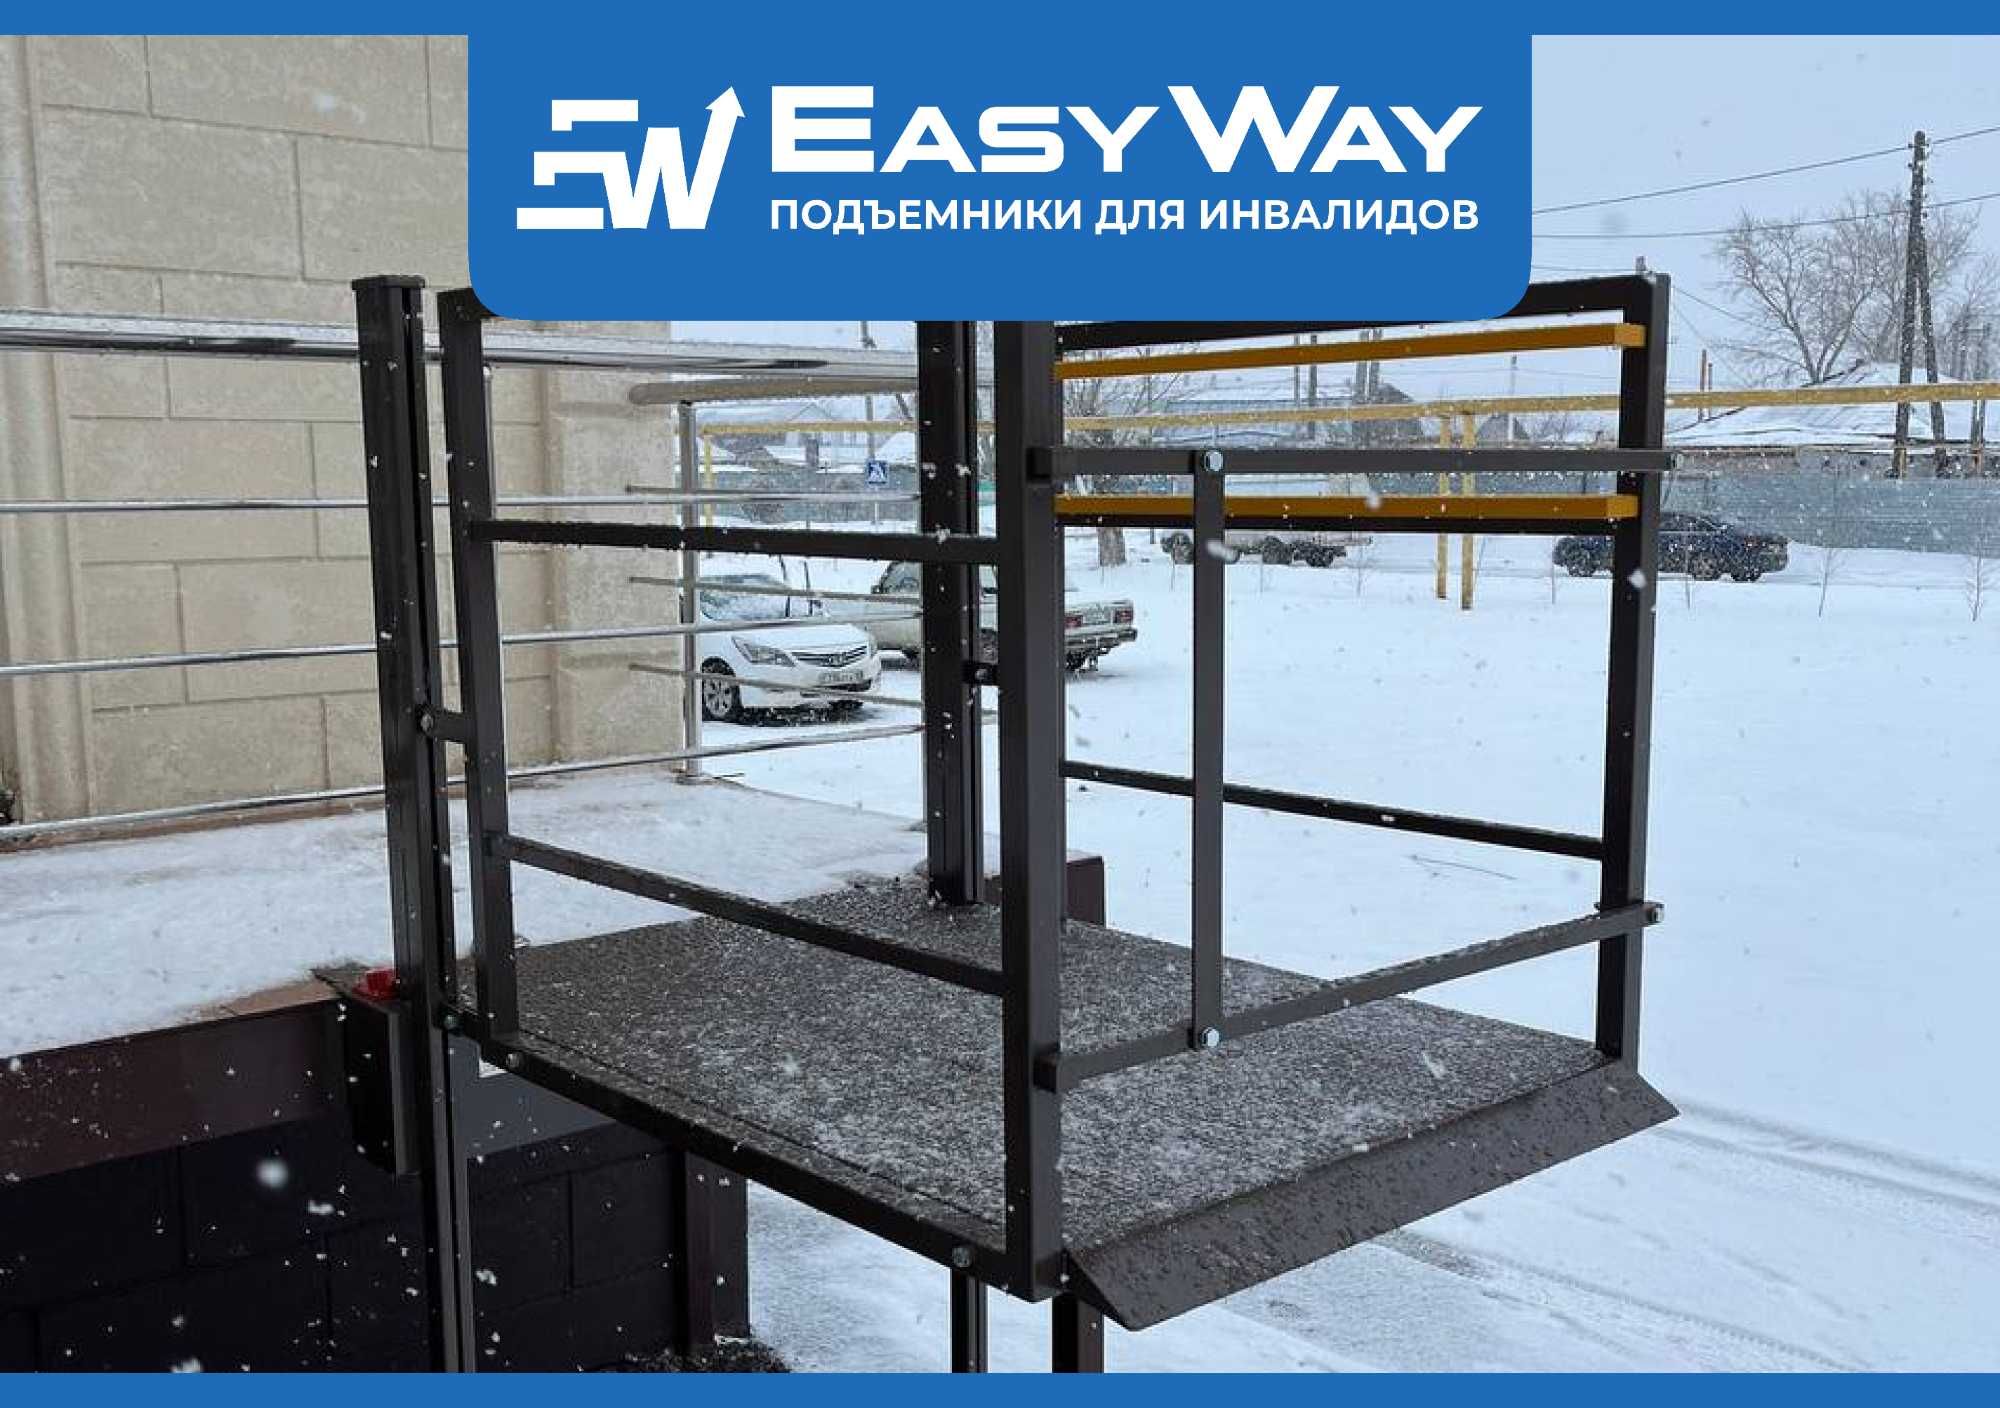 EasyWay: Подъёмники для инвалидов колясочников (г. Атырау)